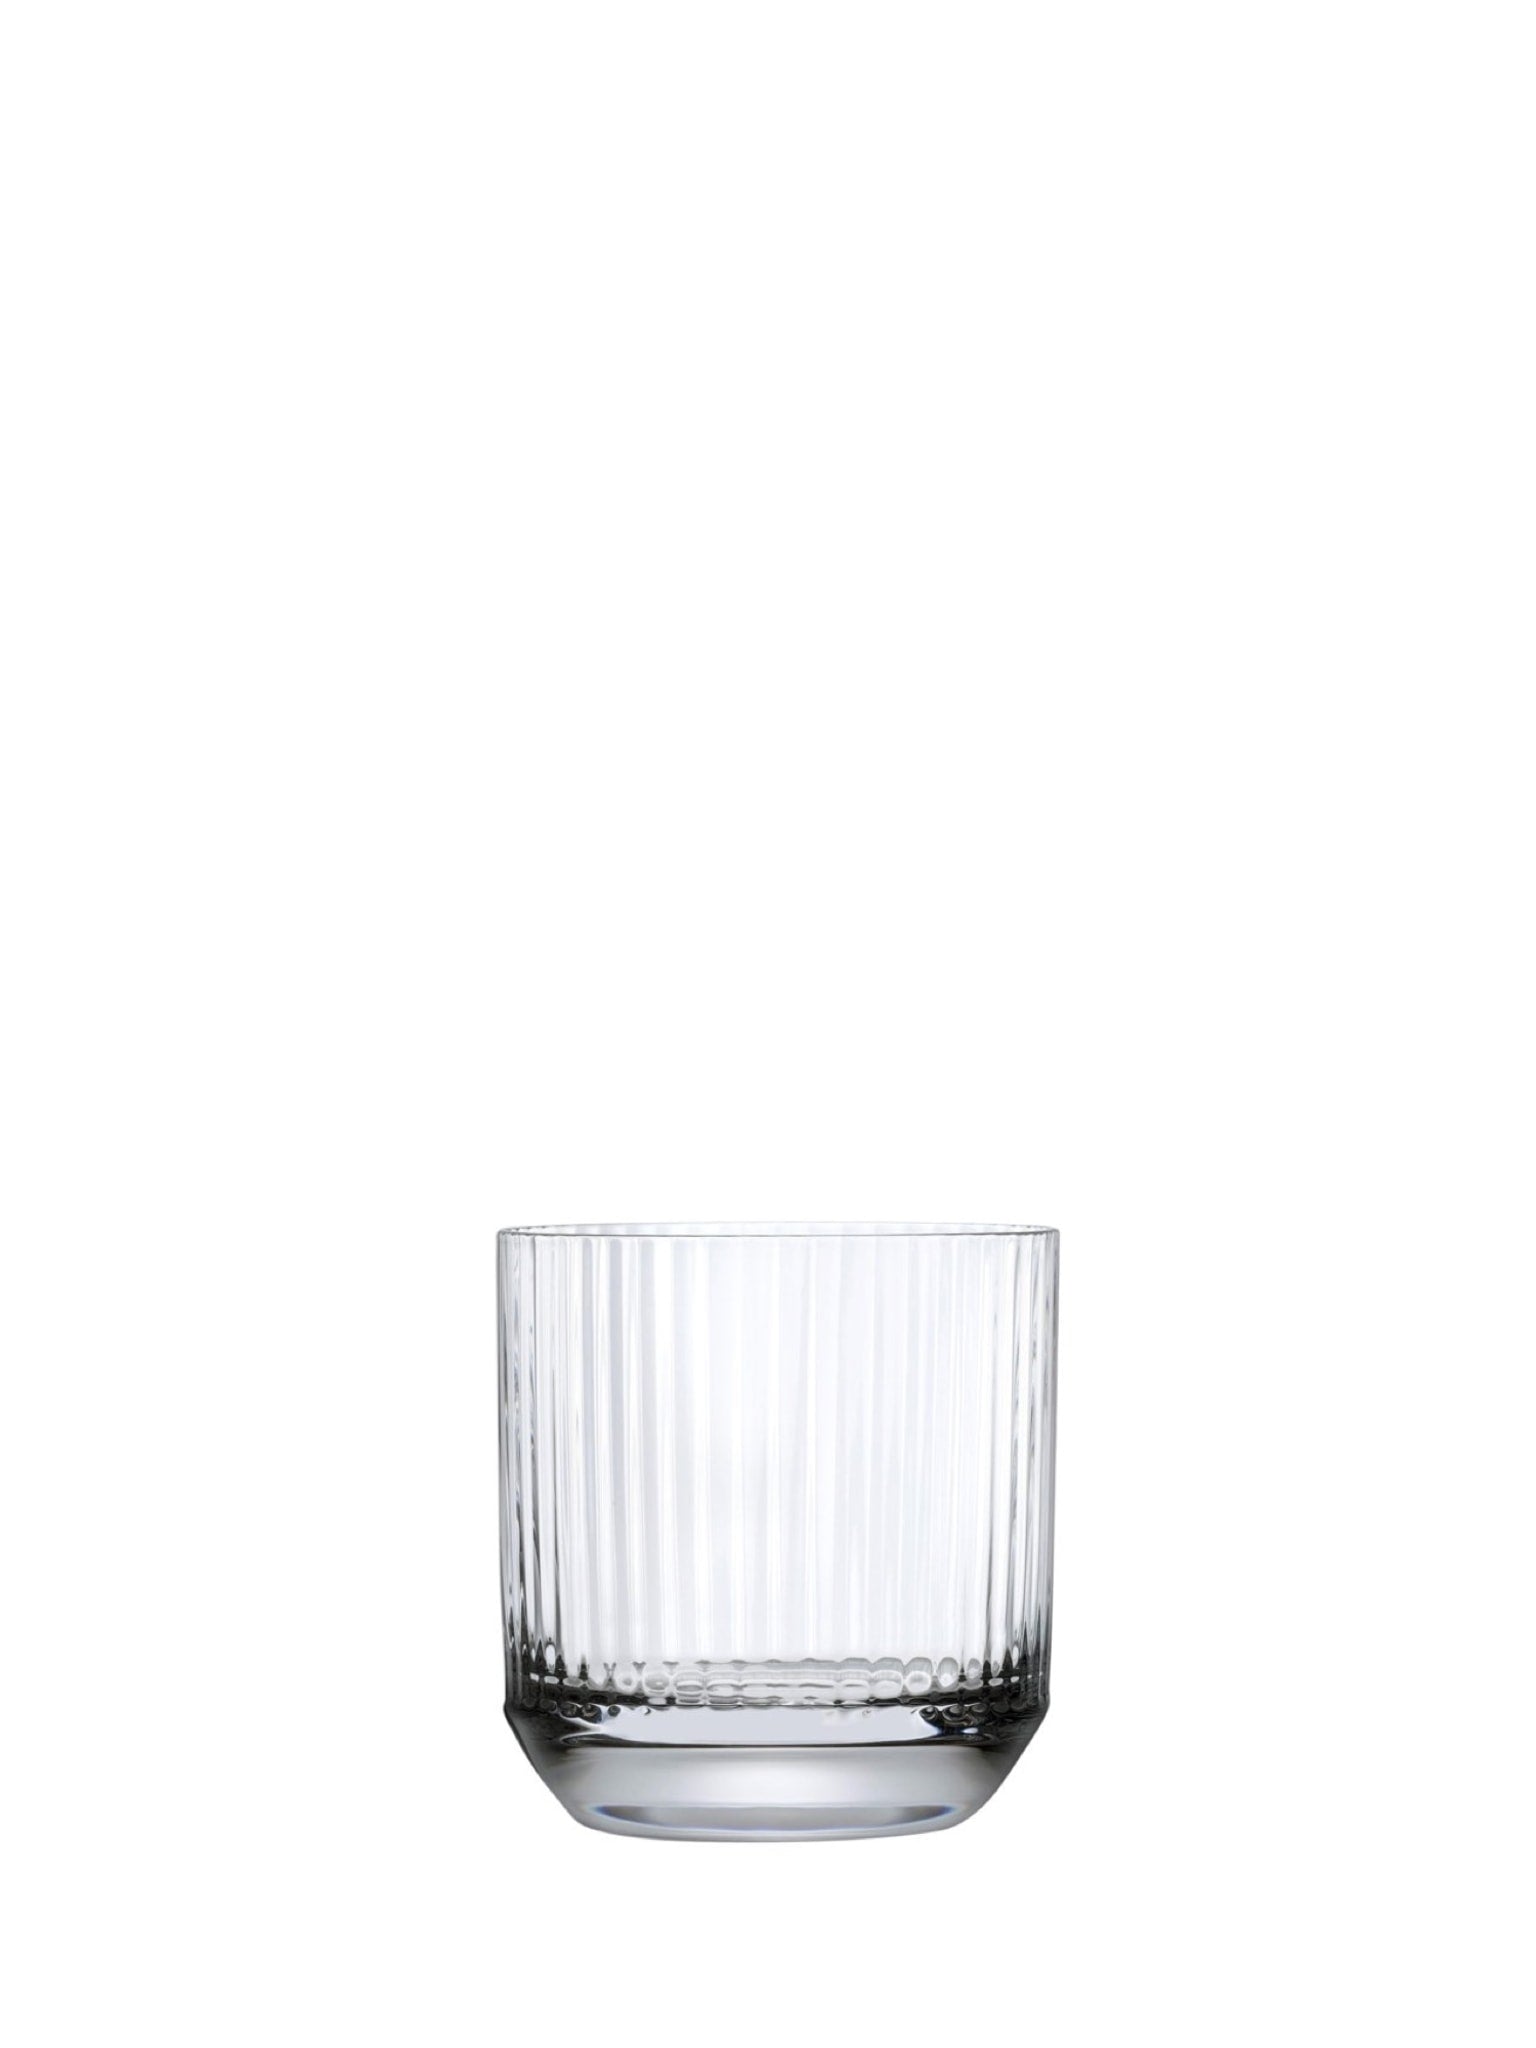 Whiskyglas med stor top - Perfekt til at nyde din yndlingswhisky i stil og komfort